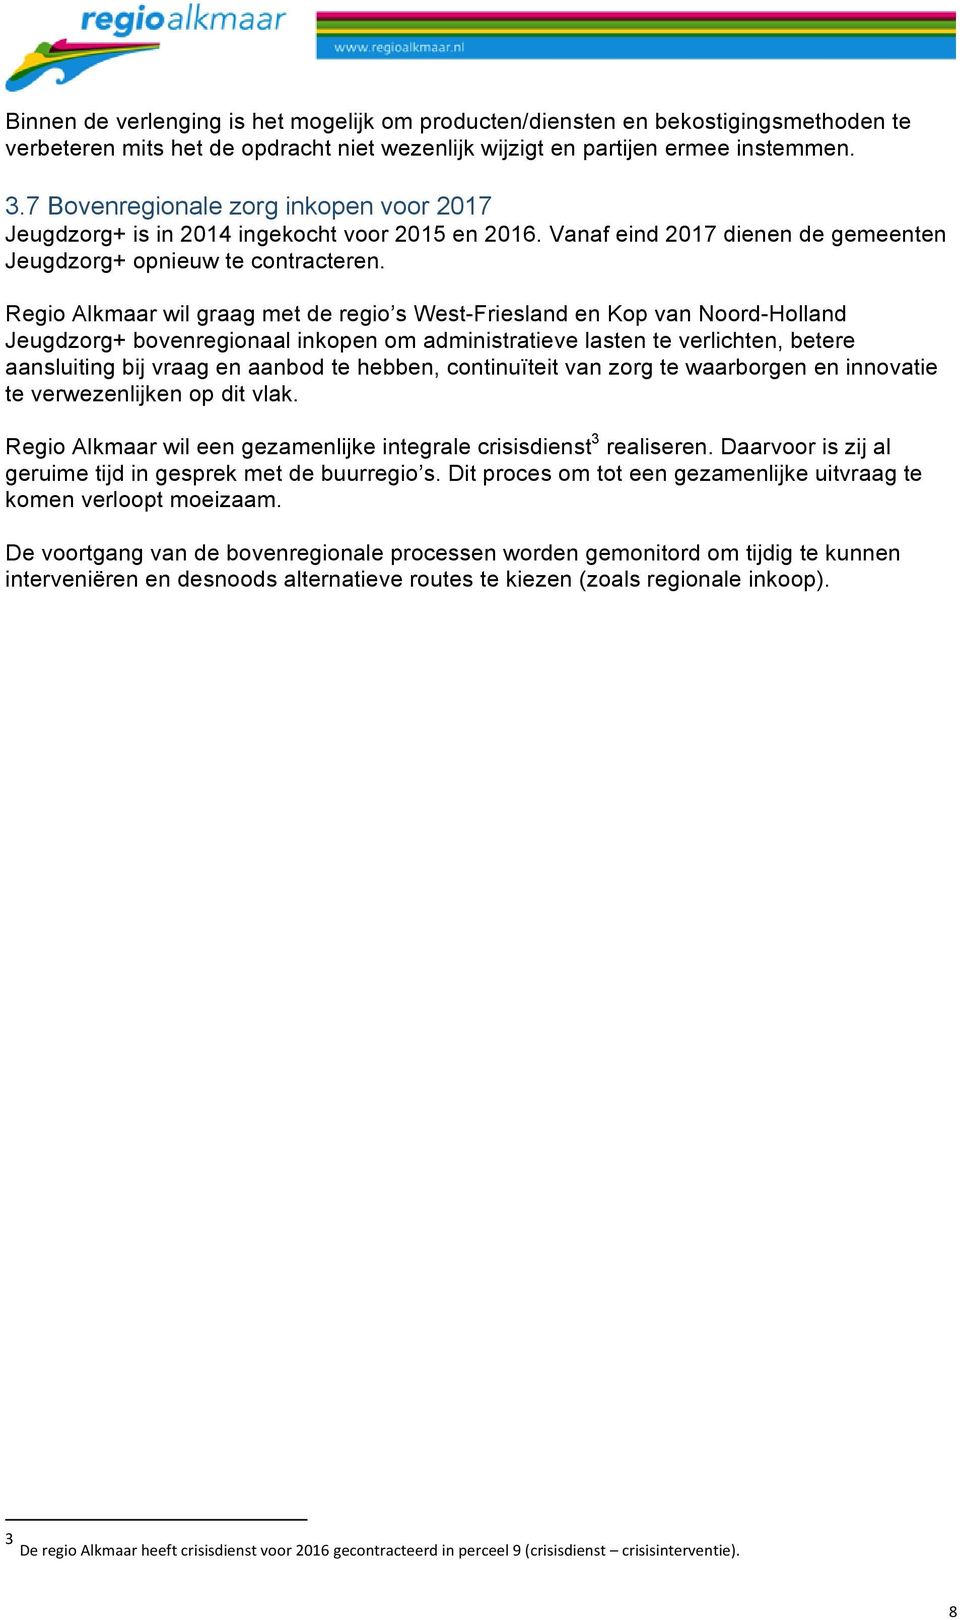 Regio Alkmaar wil graag met de regio s West-Friesland en Kop van Noord-Holland Jeugdzorg+ bovenregionaal inkopen om administratieve lasten te verlichten, betere aansluiting bij vraag en aanbod te